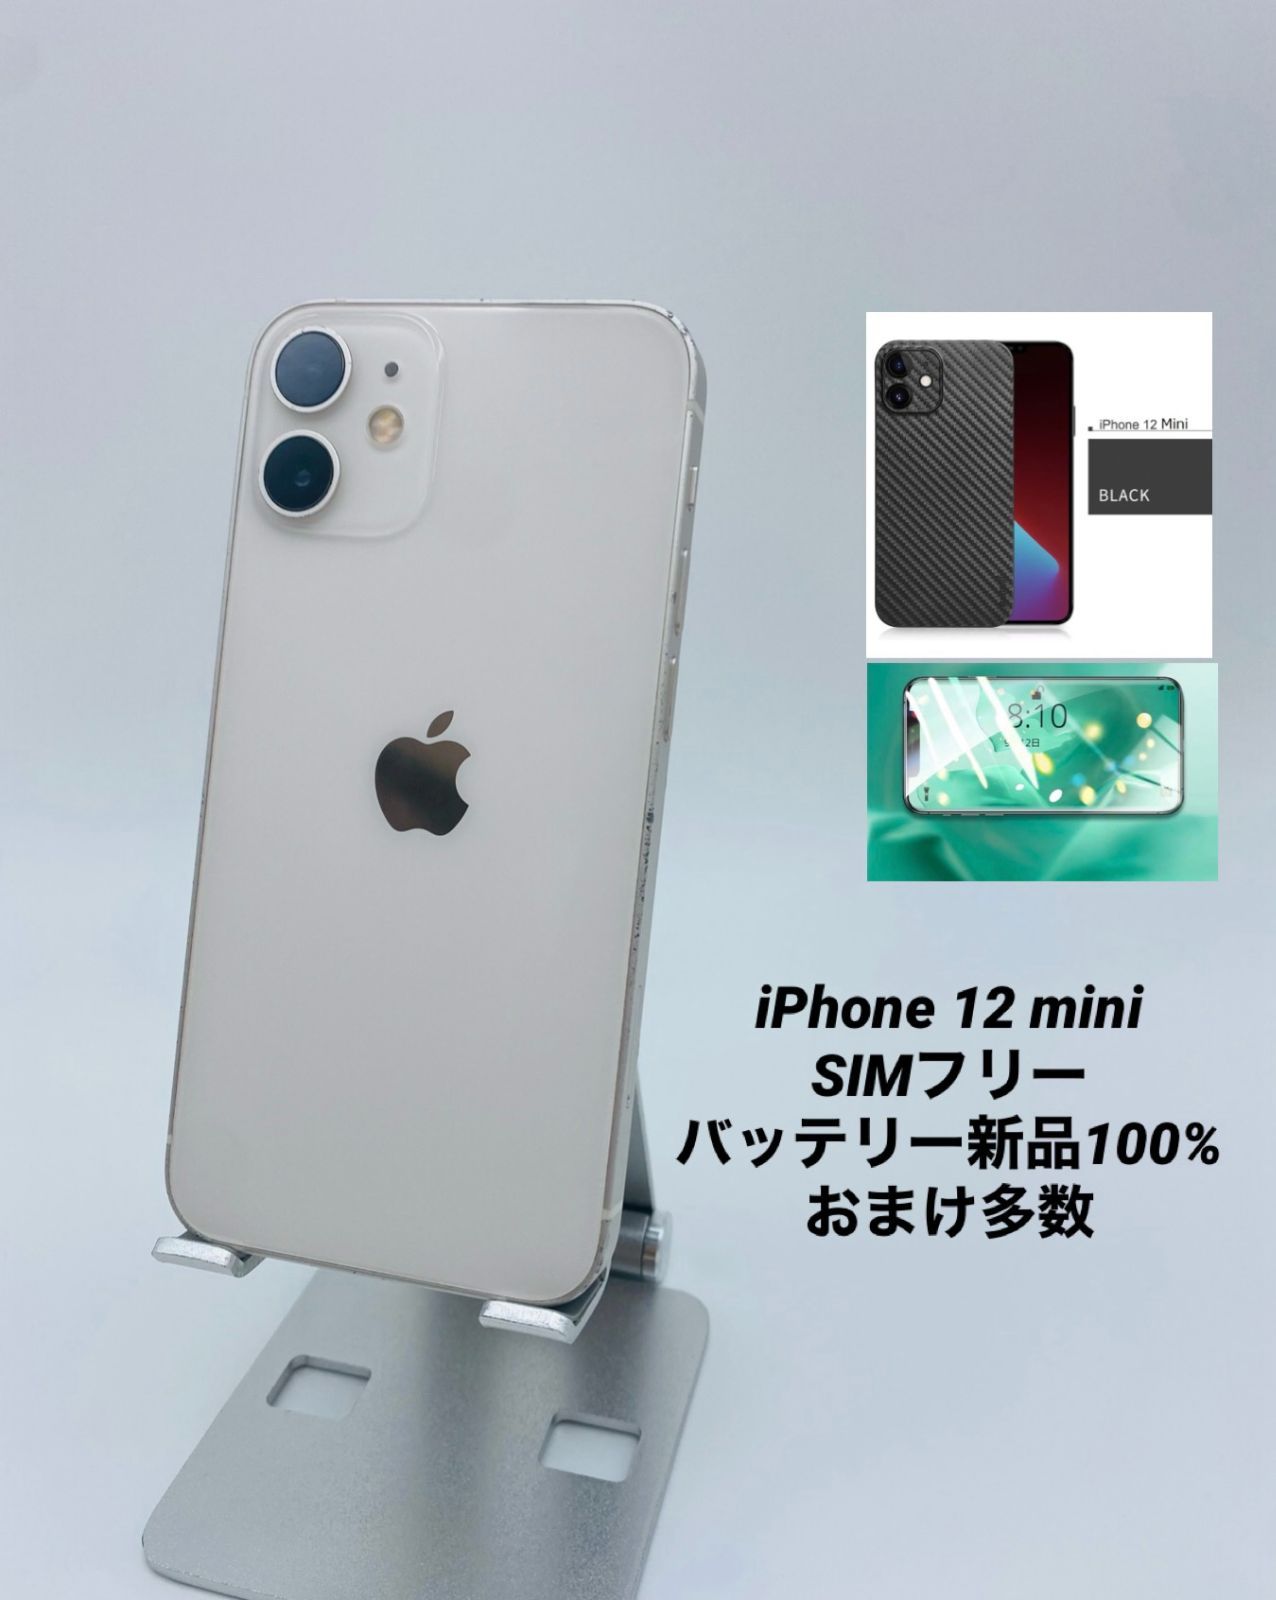 iPhone 12 mini 64GB ホワイト/シムフリー/純正バッテリー100%/極薄